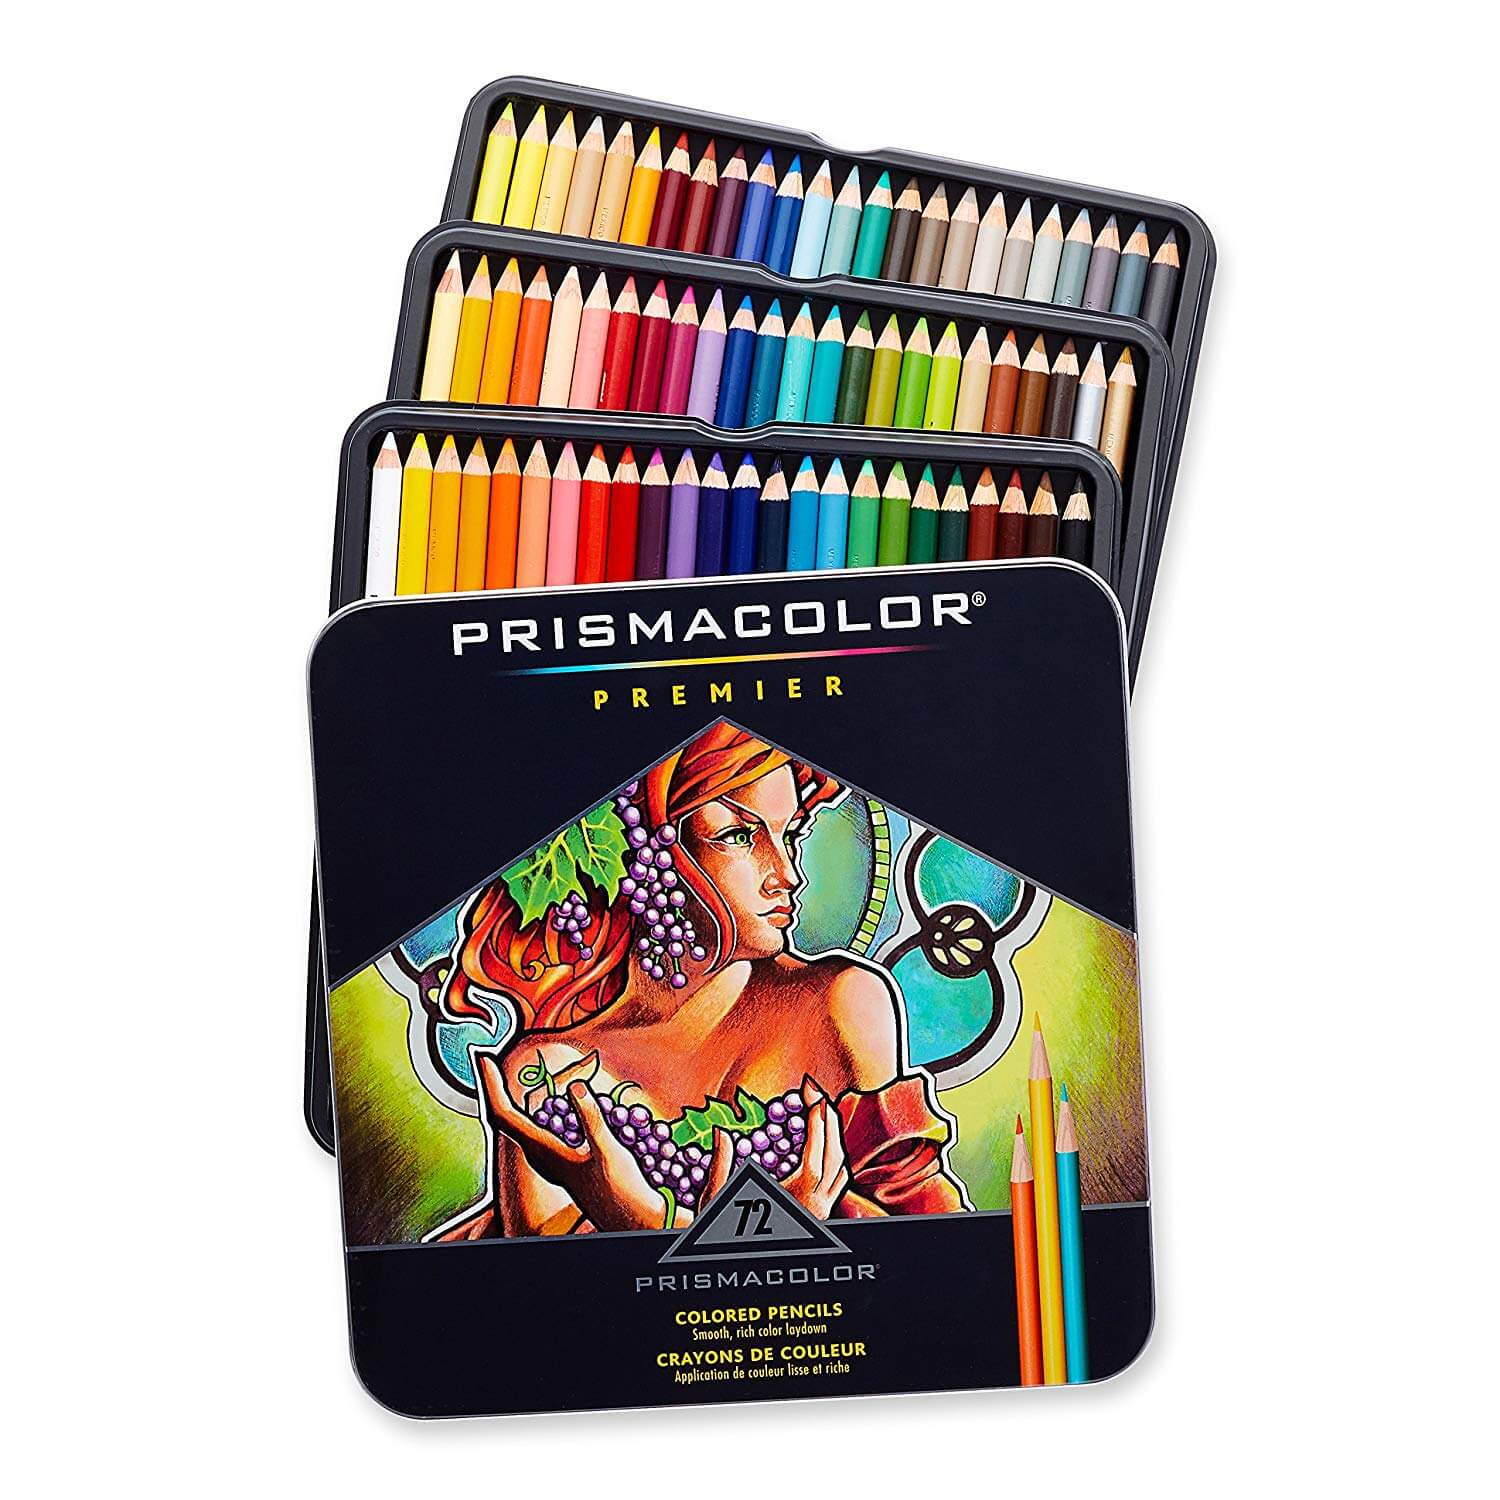 https://restylegraphic.com/wp-content/uploads/2019/05/Prismacolor-Premier-Colored-Pencils.jpg